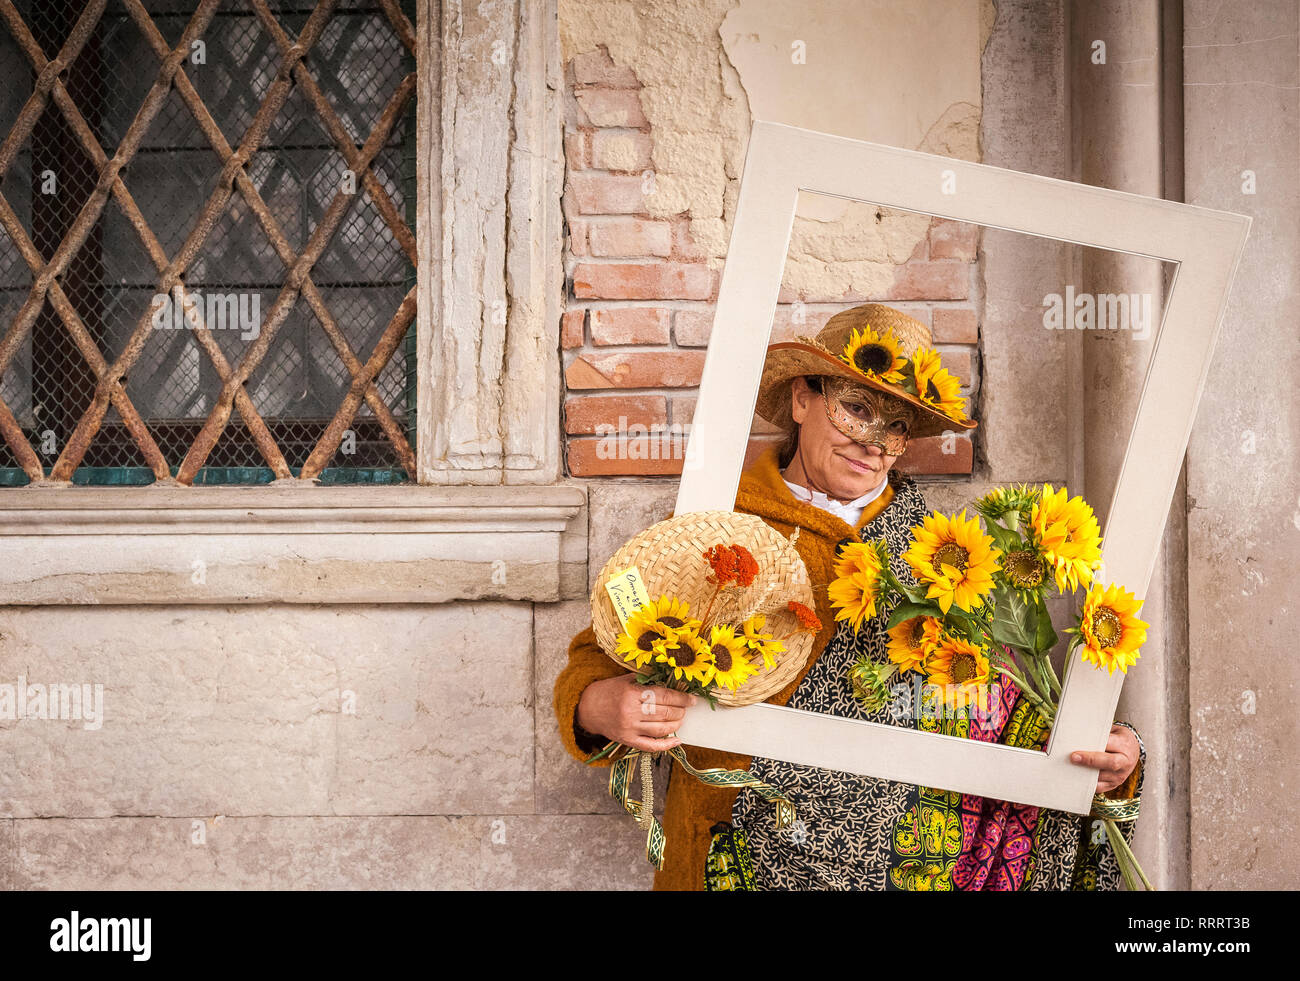 Hommage à Vincent Van Gogh d'une femme masquée du carnaval à Venise Banque D'Images